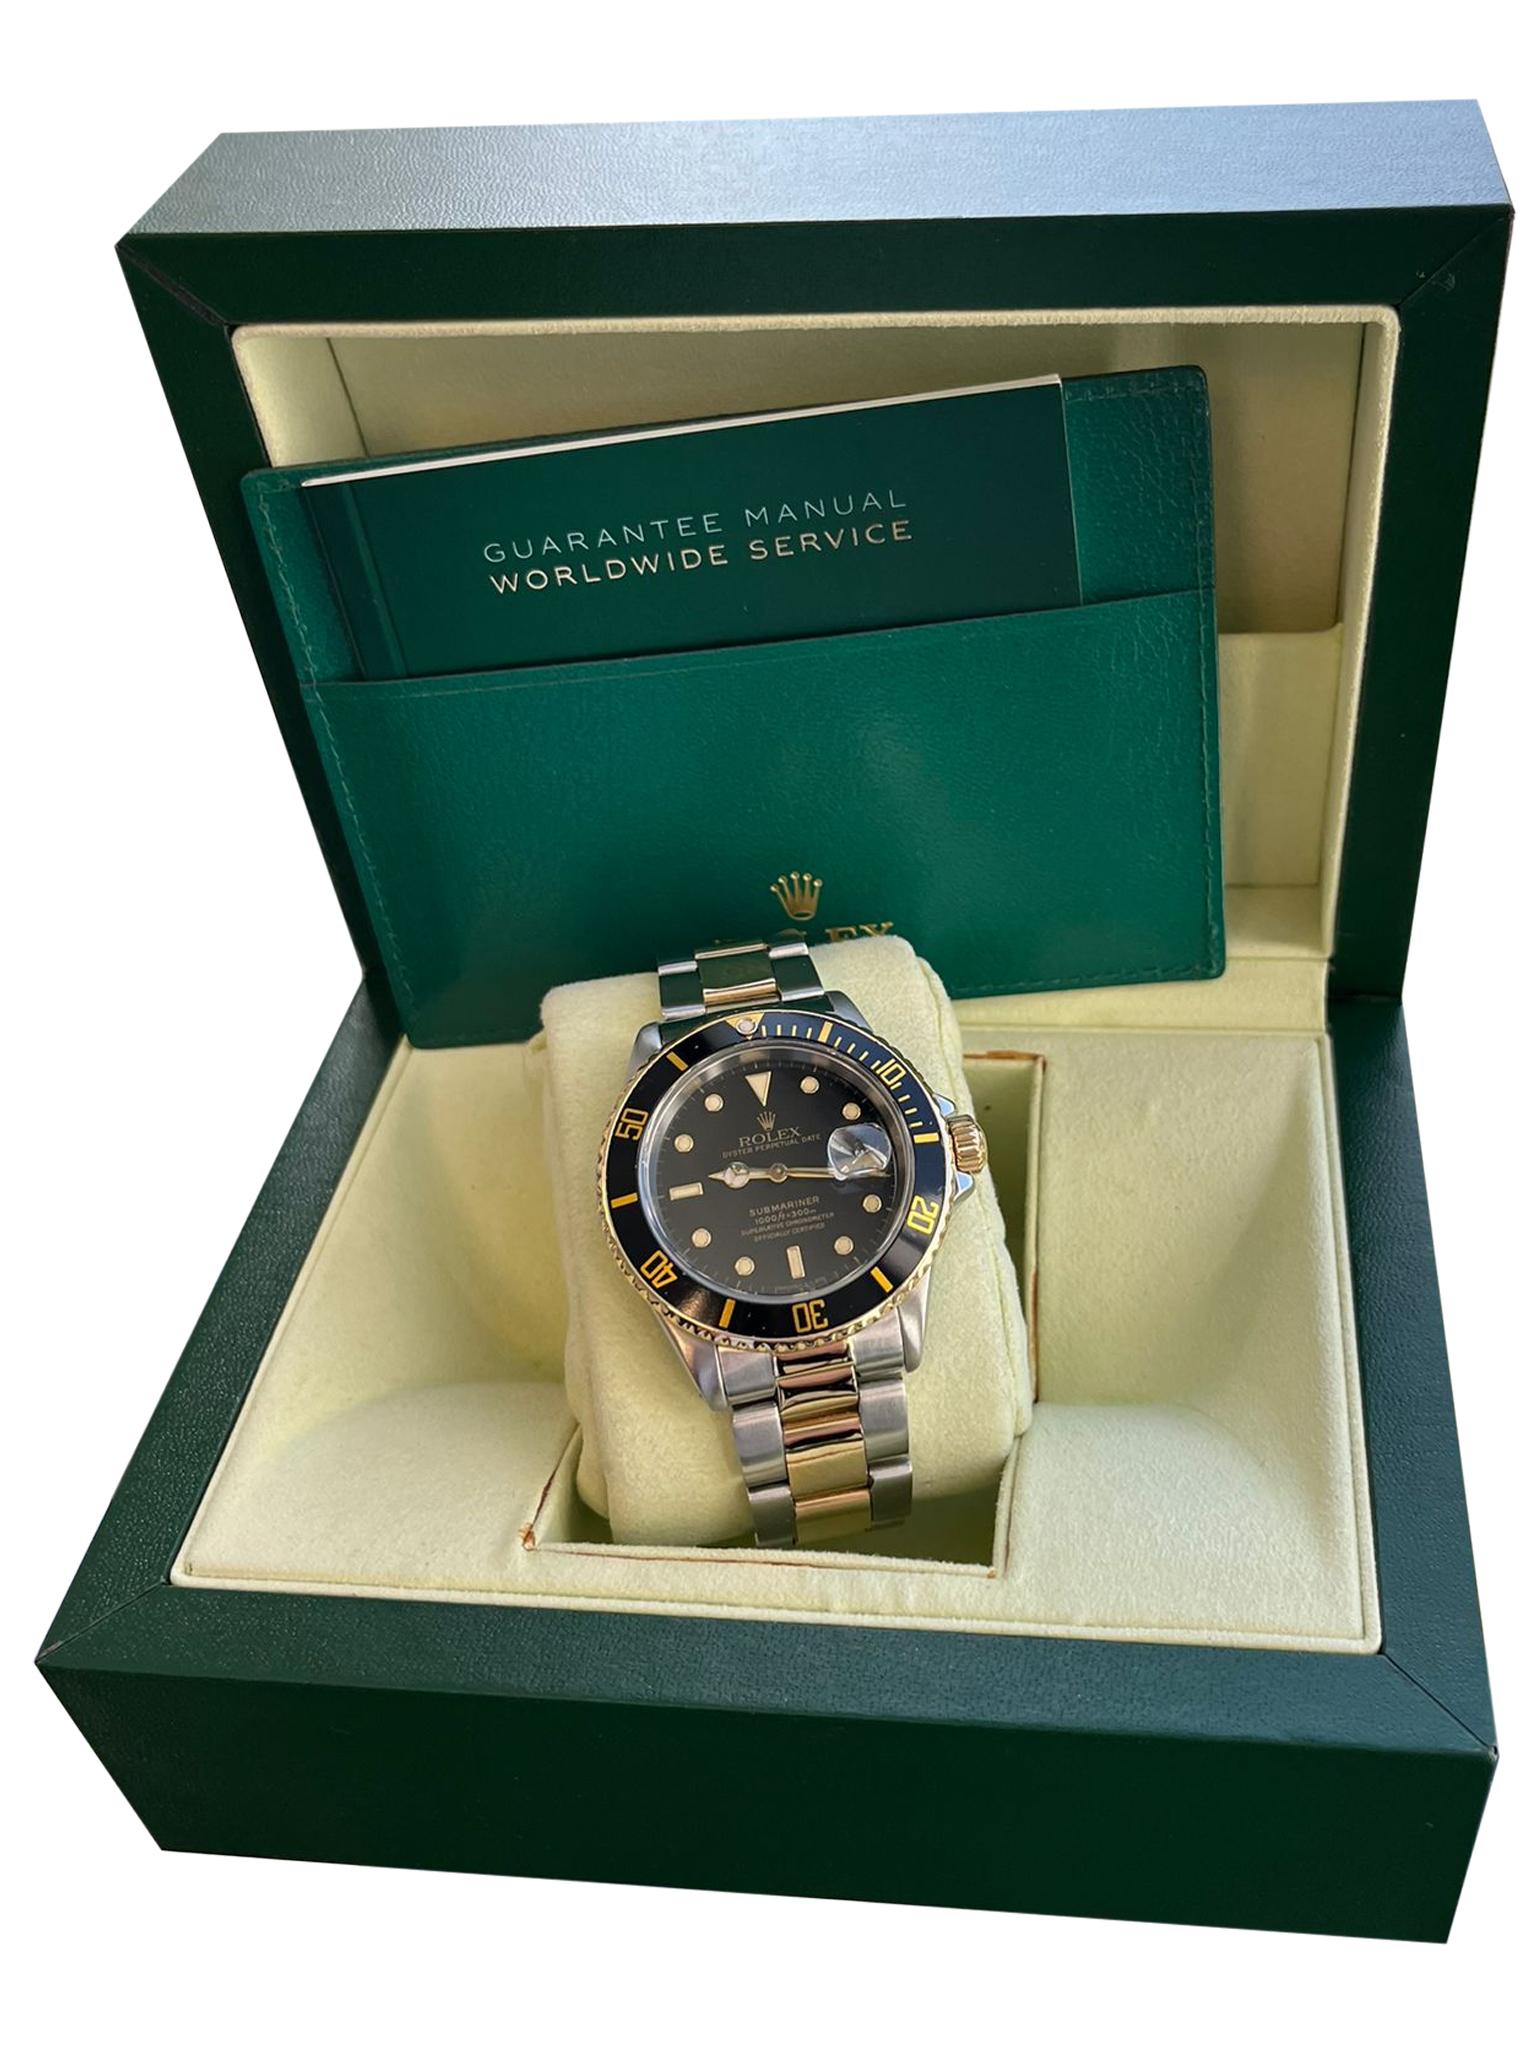 Rolex Submariner Steel Yellow Gold Black Dial Mens Watch 16613 Box Papers. Mouvement automatique à remontage automatique, officiellement certifié chronomètre. Boîtier en acier inoxydable et or jaune 18k de 40 mm de diamètre. Logo Rolex sur la